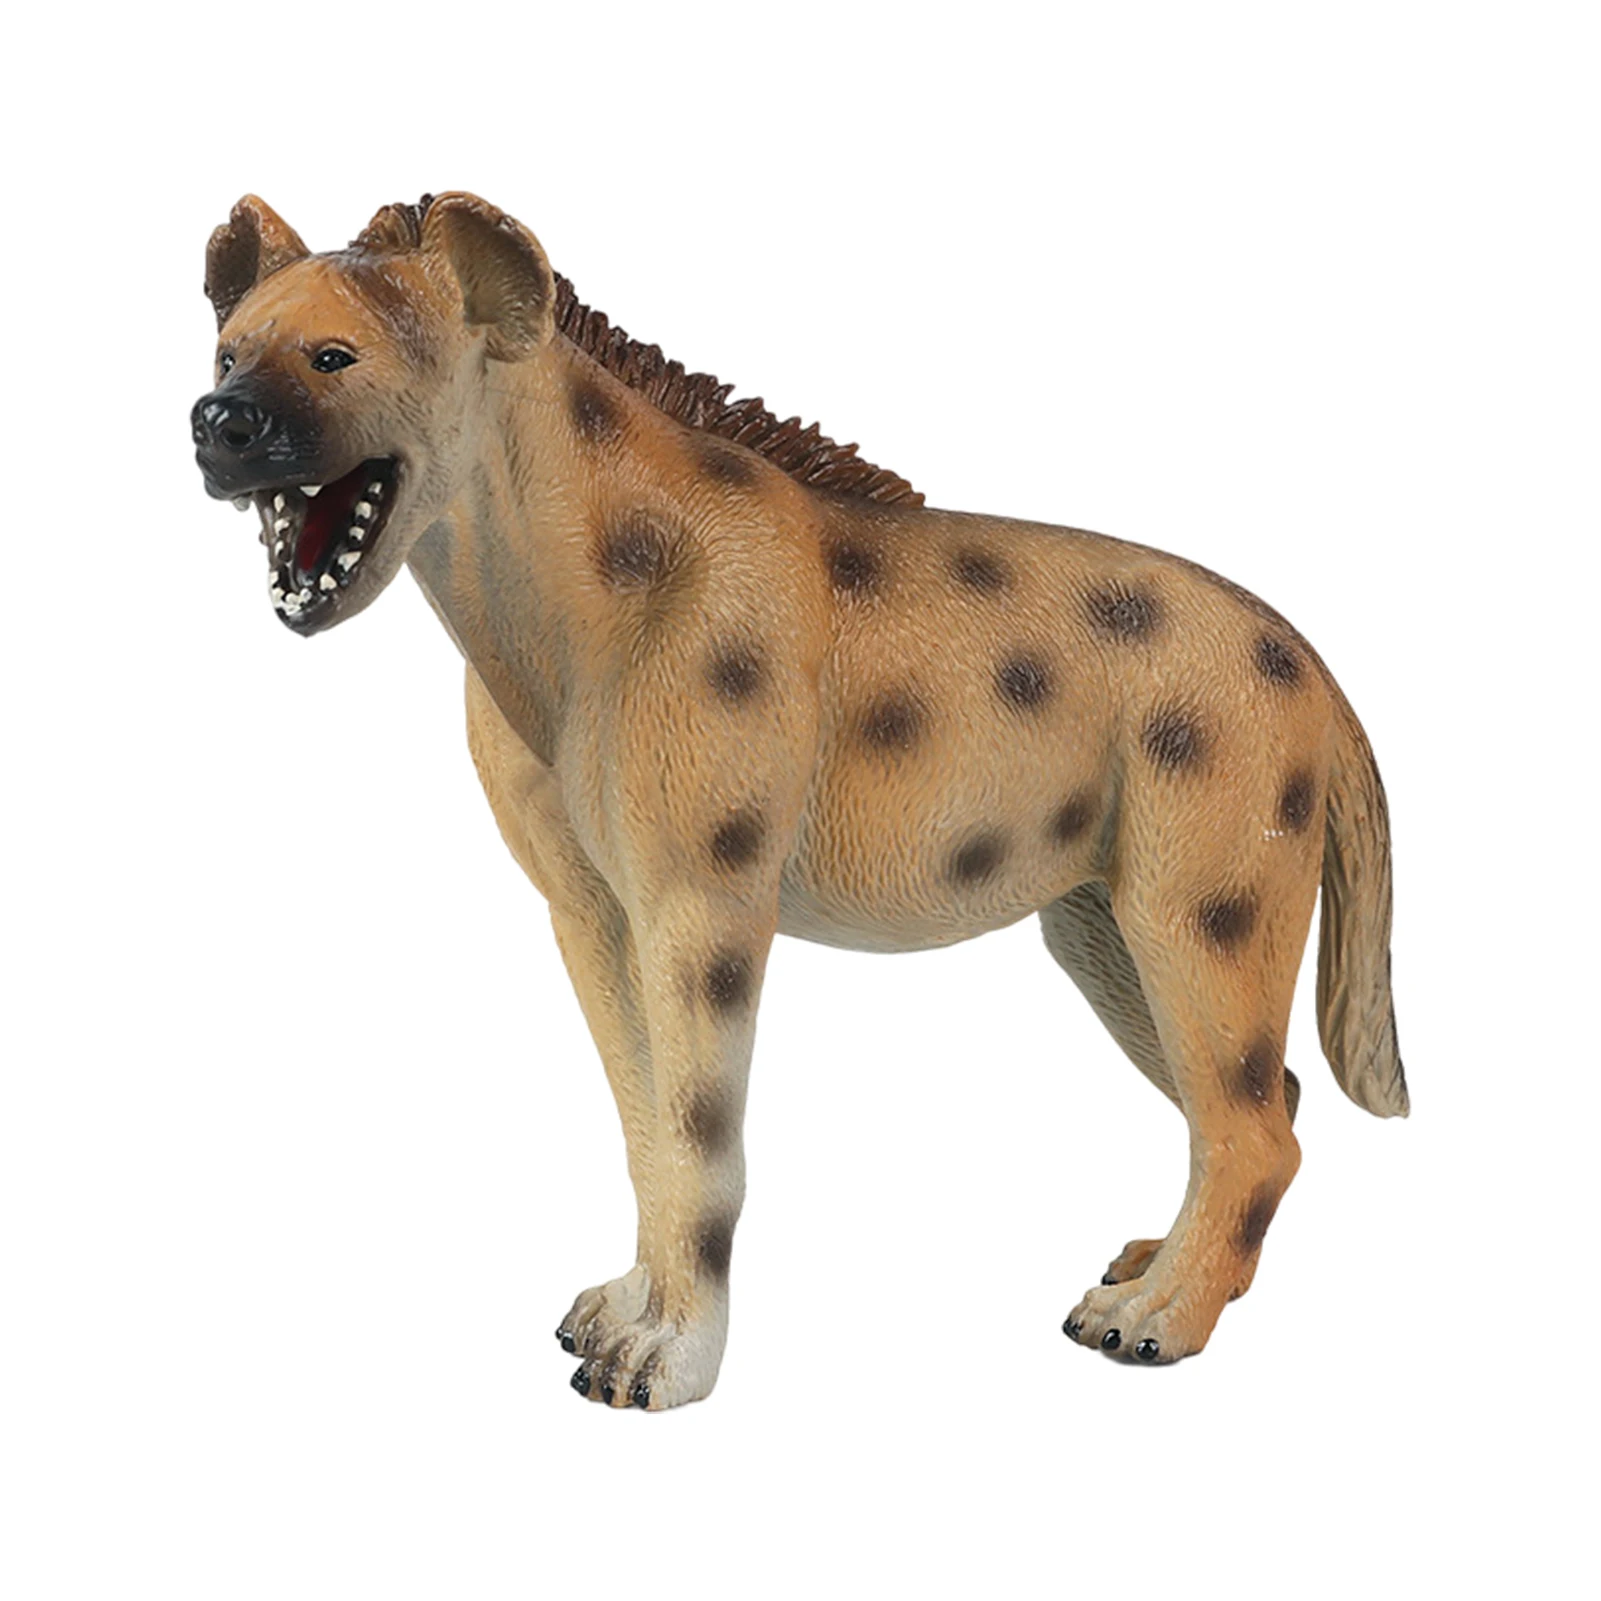 Фигурка-модель животного из ПВХ игрушечная фигурка-животное для детей фигурка